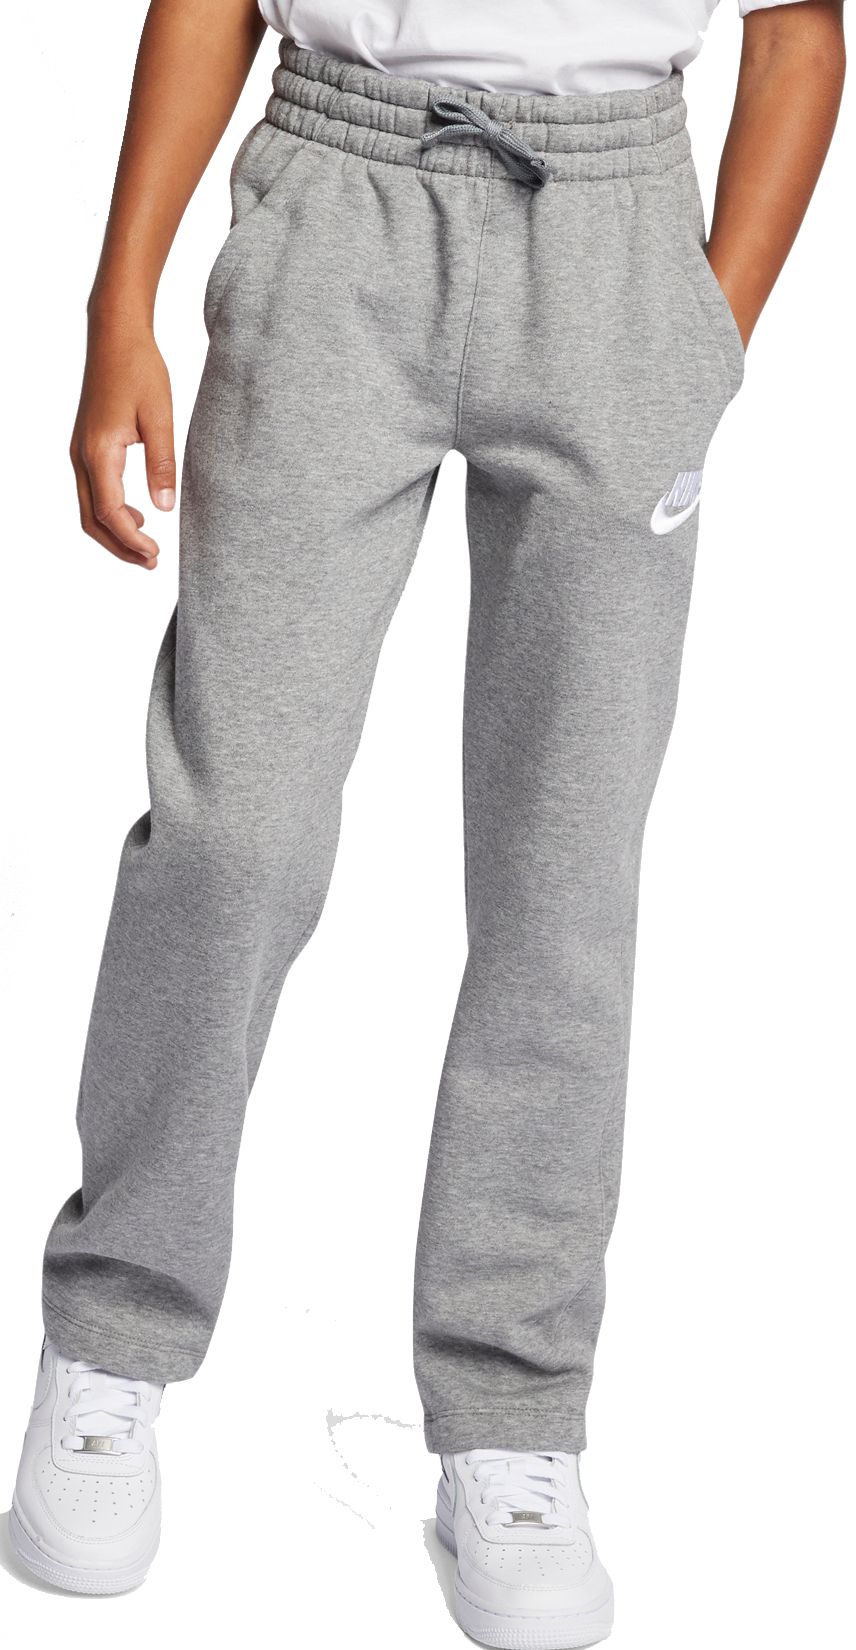 grey nike sweatpants loose fit